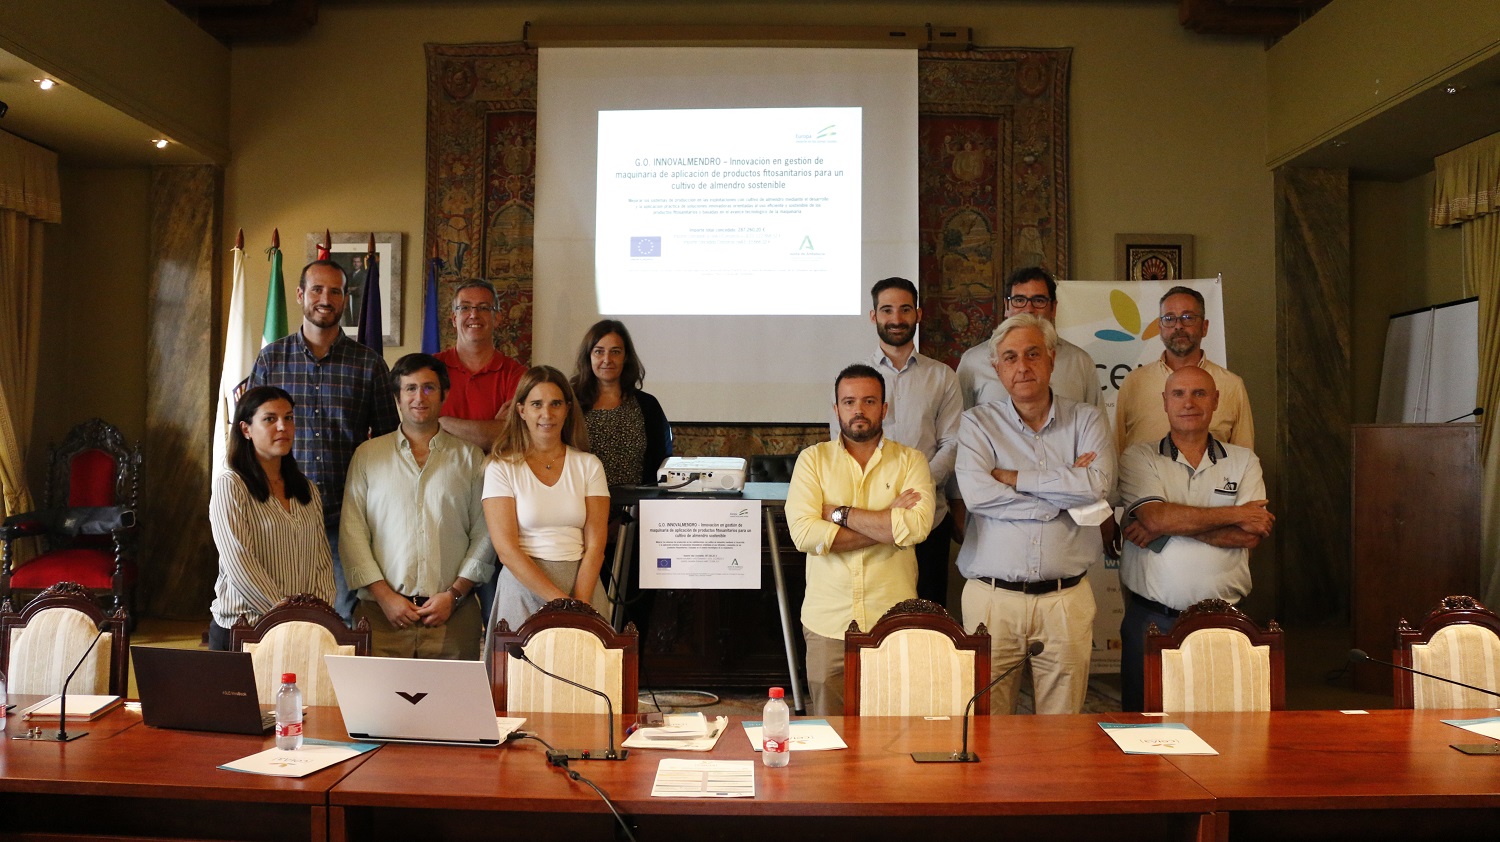 Córdoba acoge una jornada presencial del G.O. INNOVALMENDRO sobre mejora en las prácticas de aplicación de productos fitosanitarios